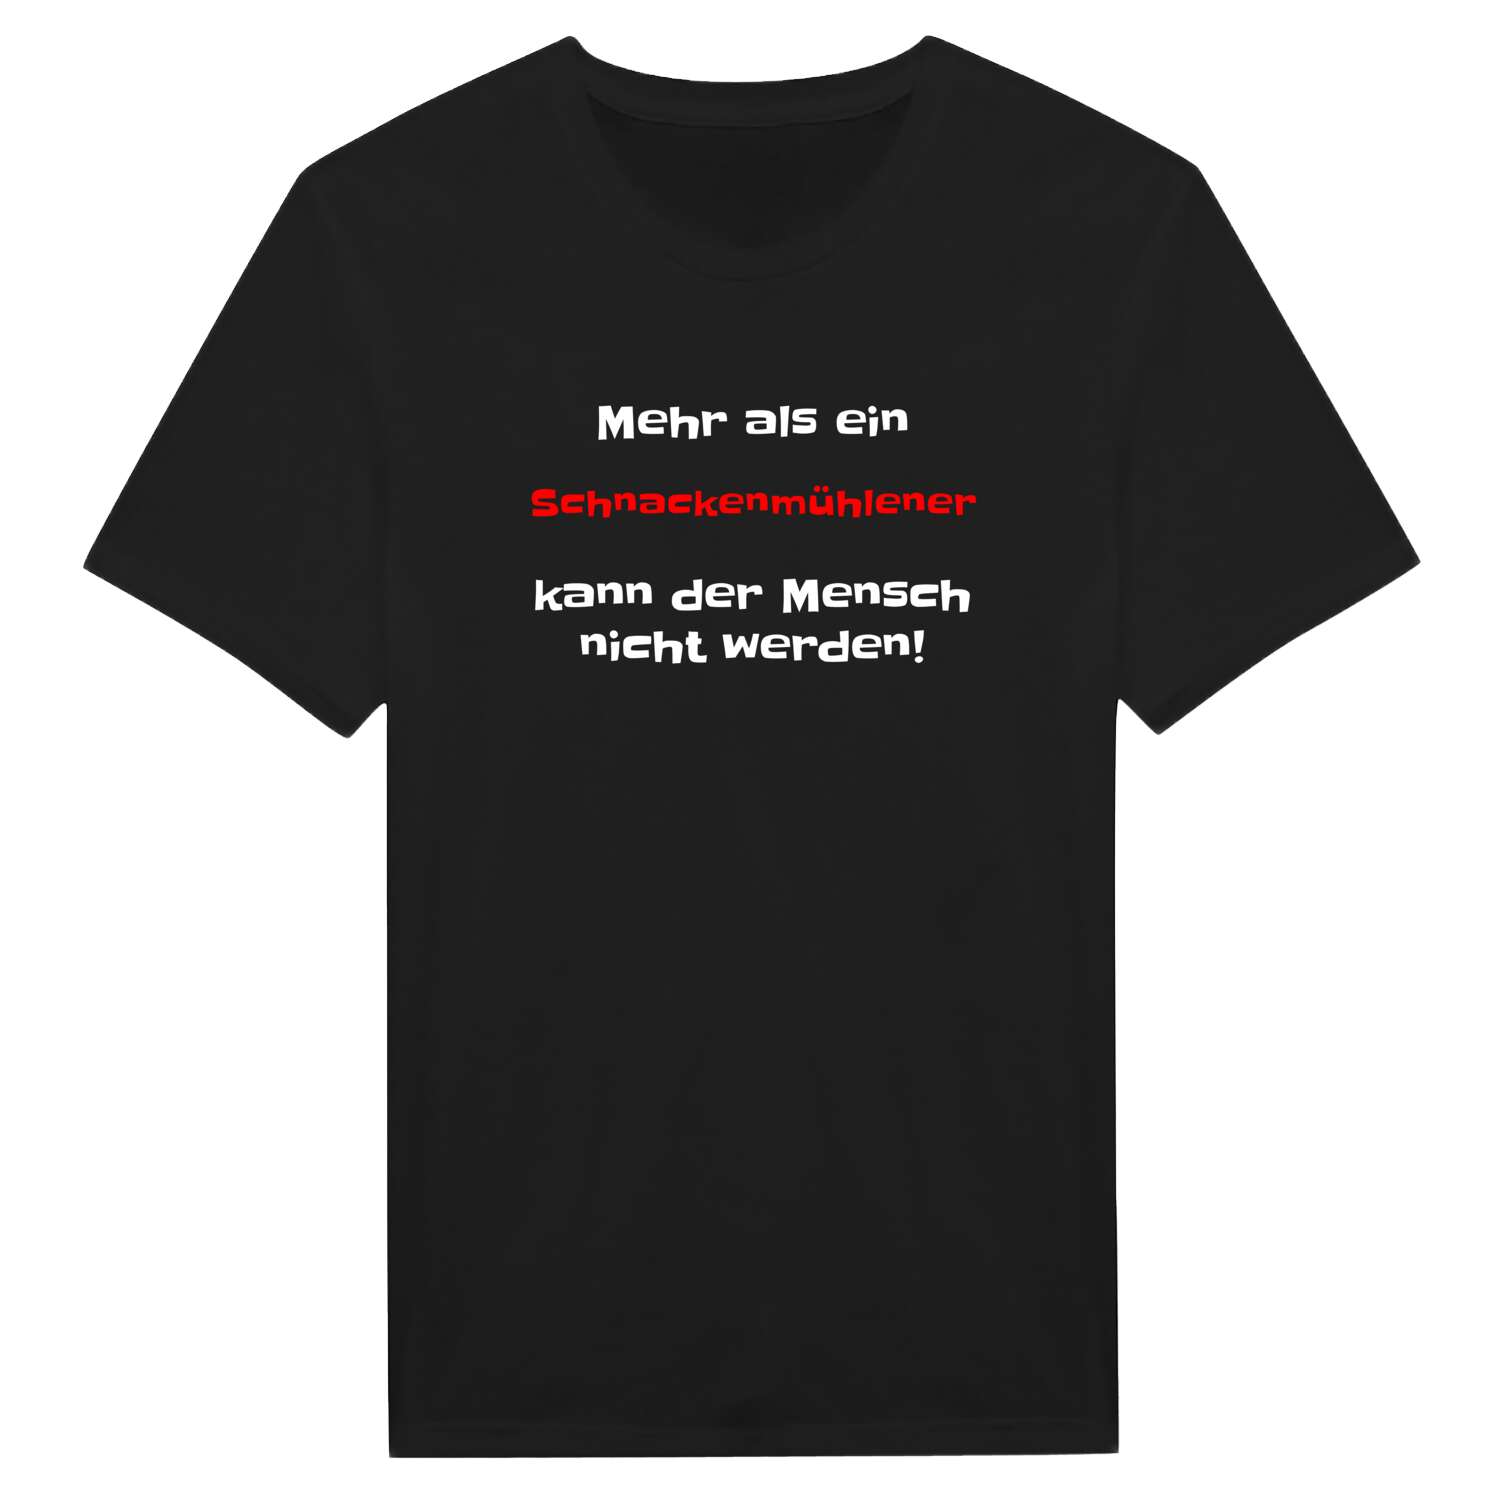 Schnackenmühle T-Shirt »Mehr als ein«